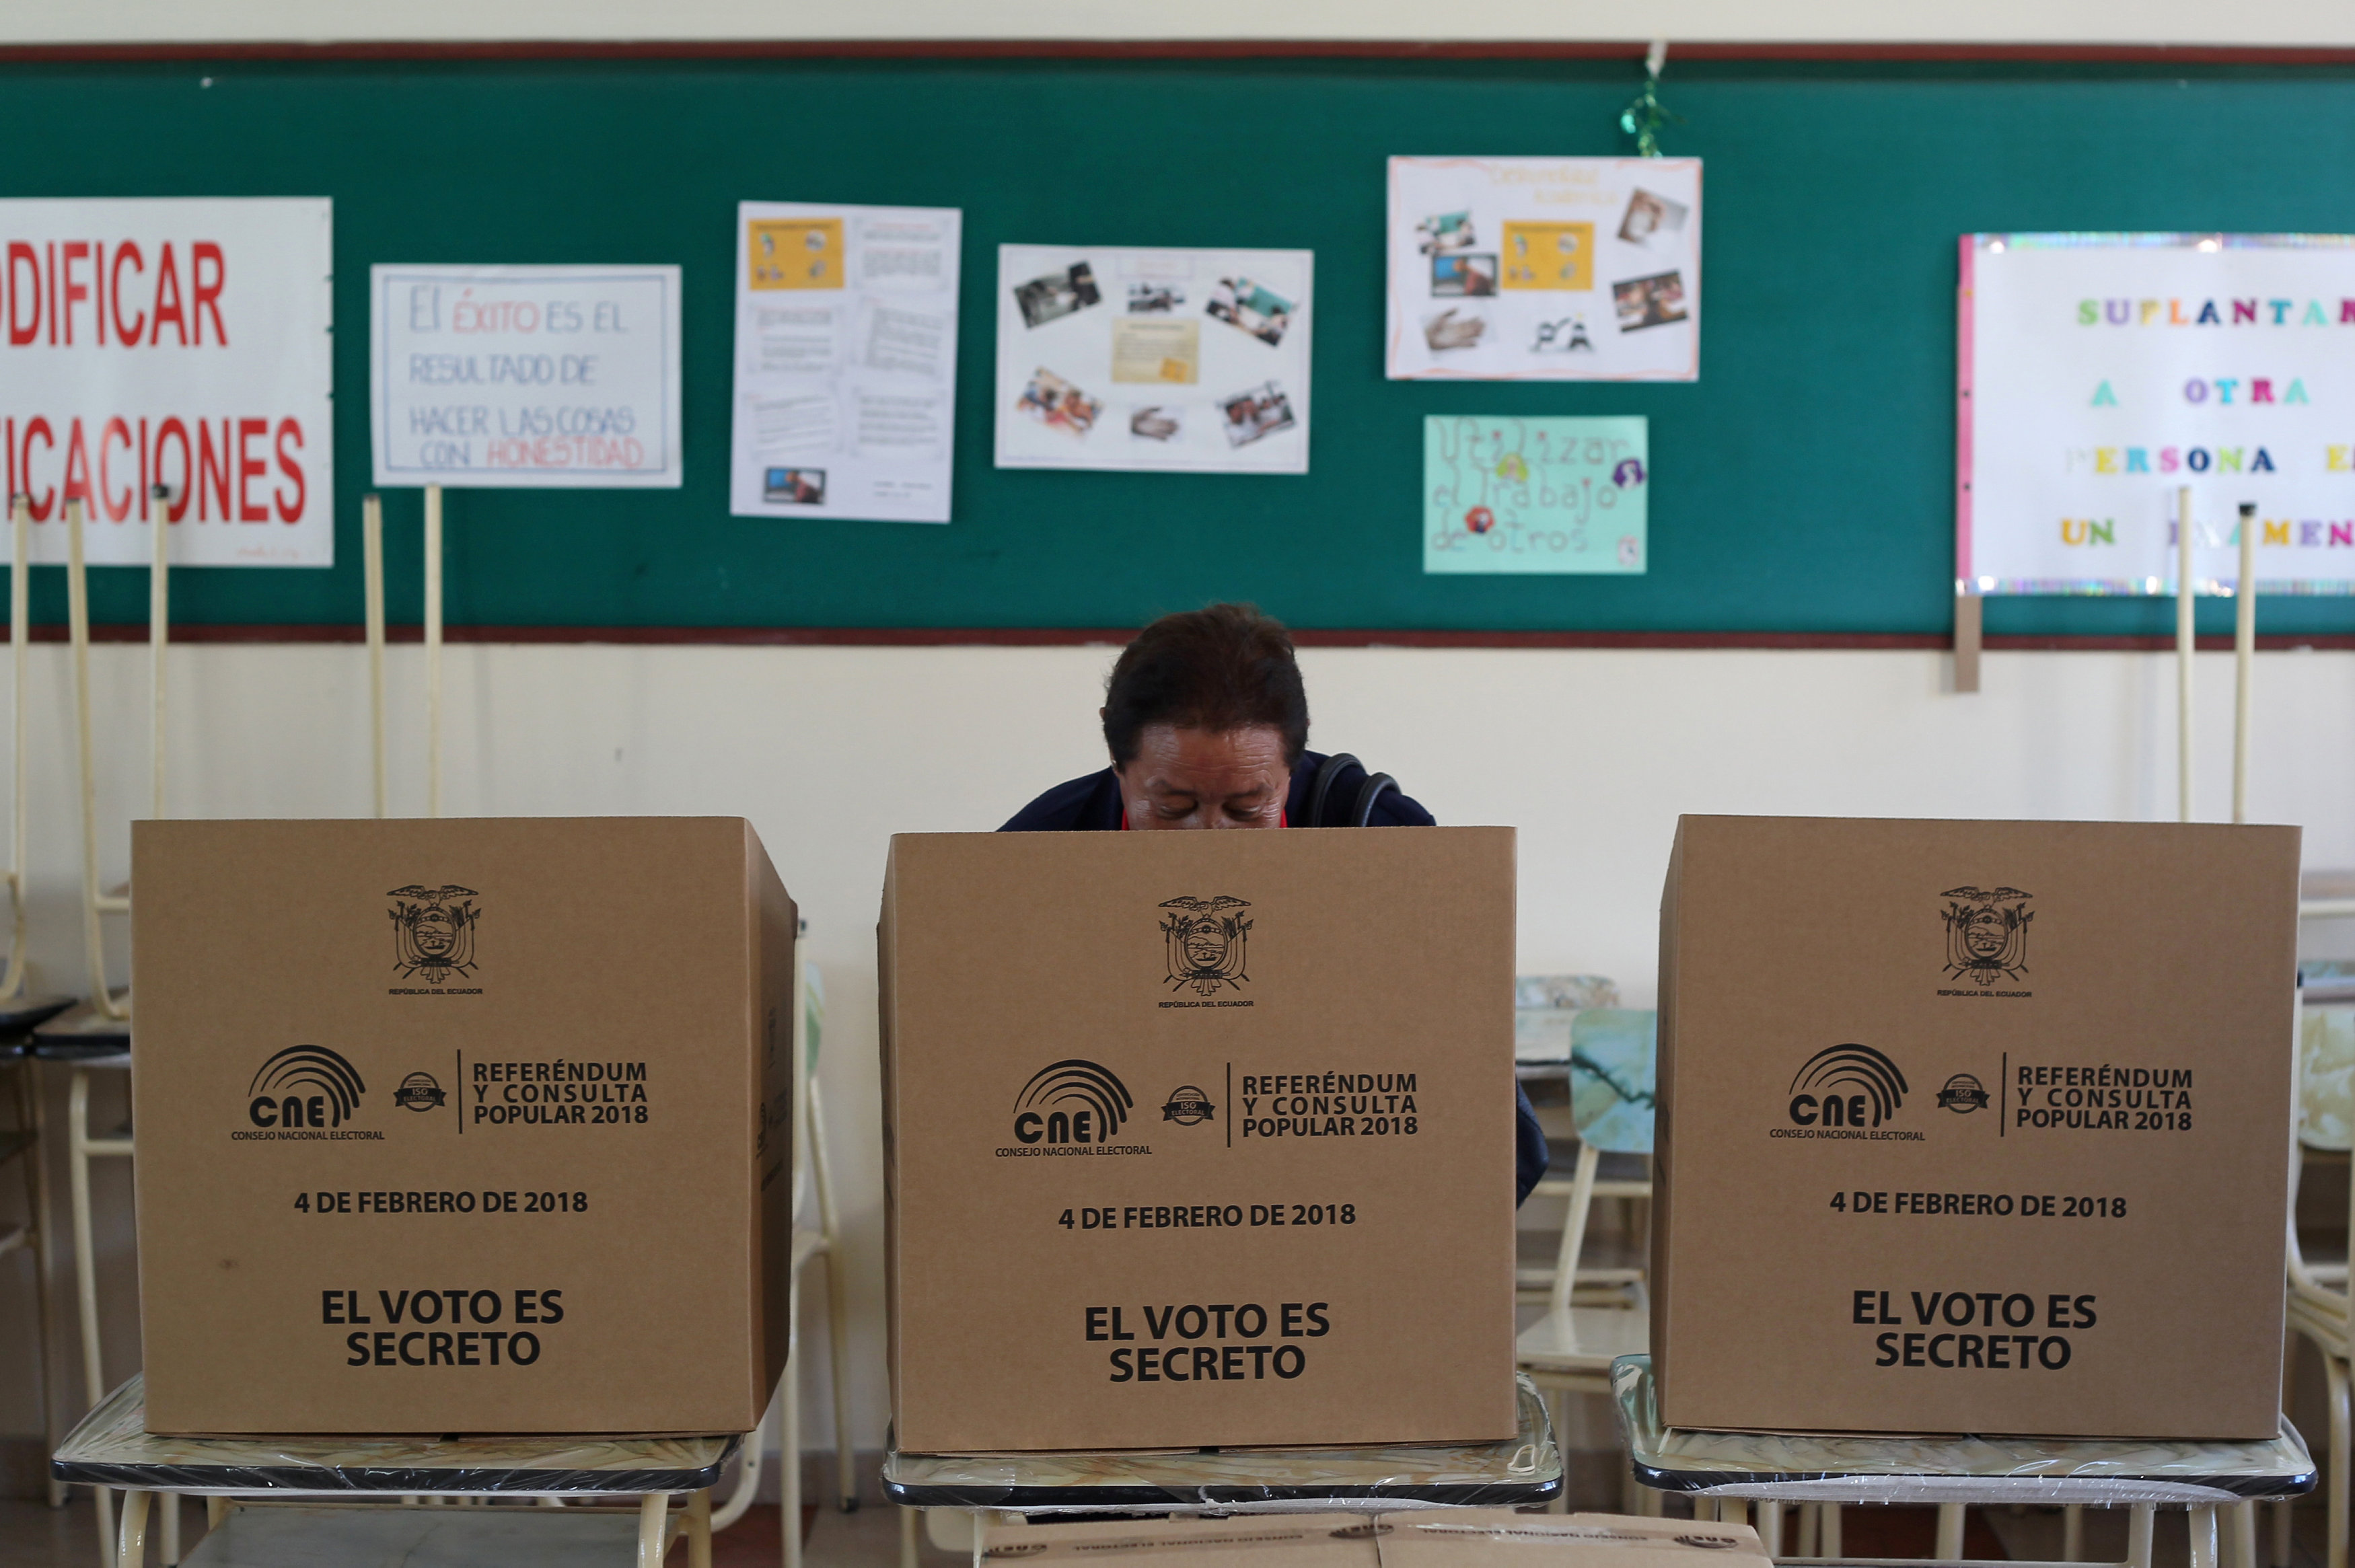 El órgano electoral desarrolló un nuevo sistema de trasmisión de resultados, en el que serán utilizados enlaces de fibra óptica, y en el que los ecuatorianos podrán hacer seguimiento mediante conexión a internet.